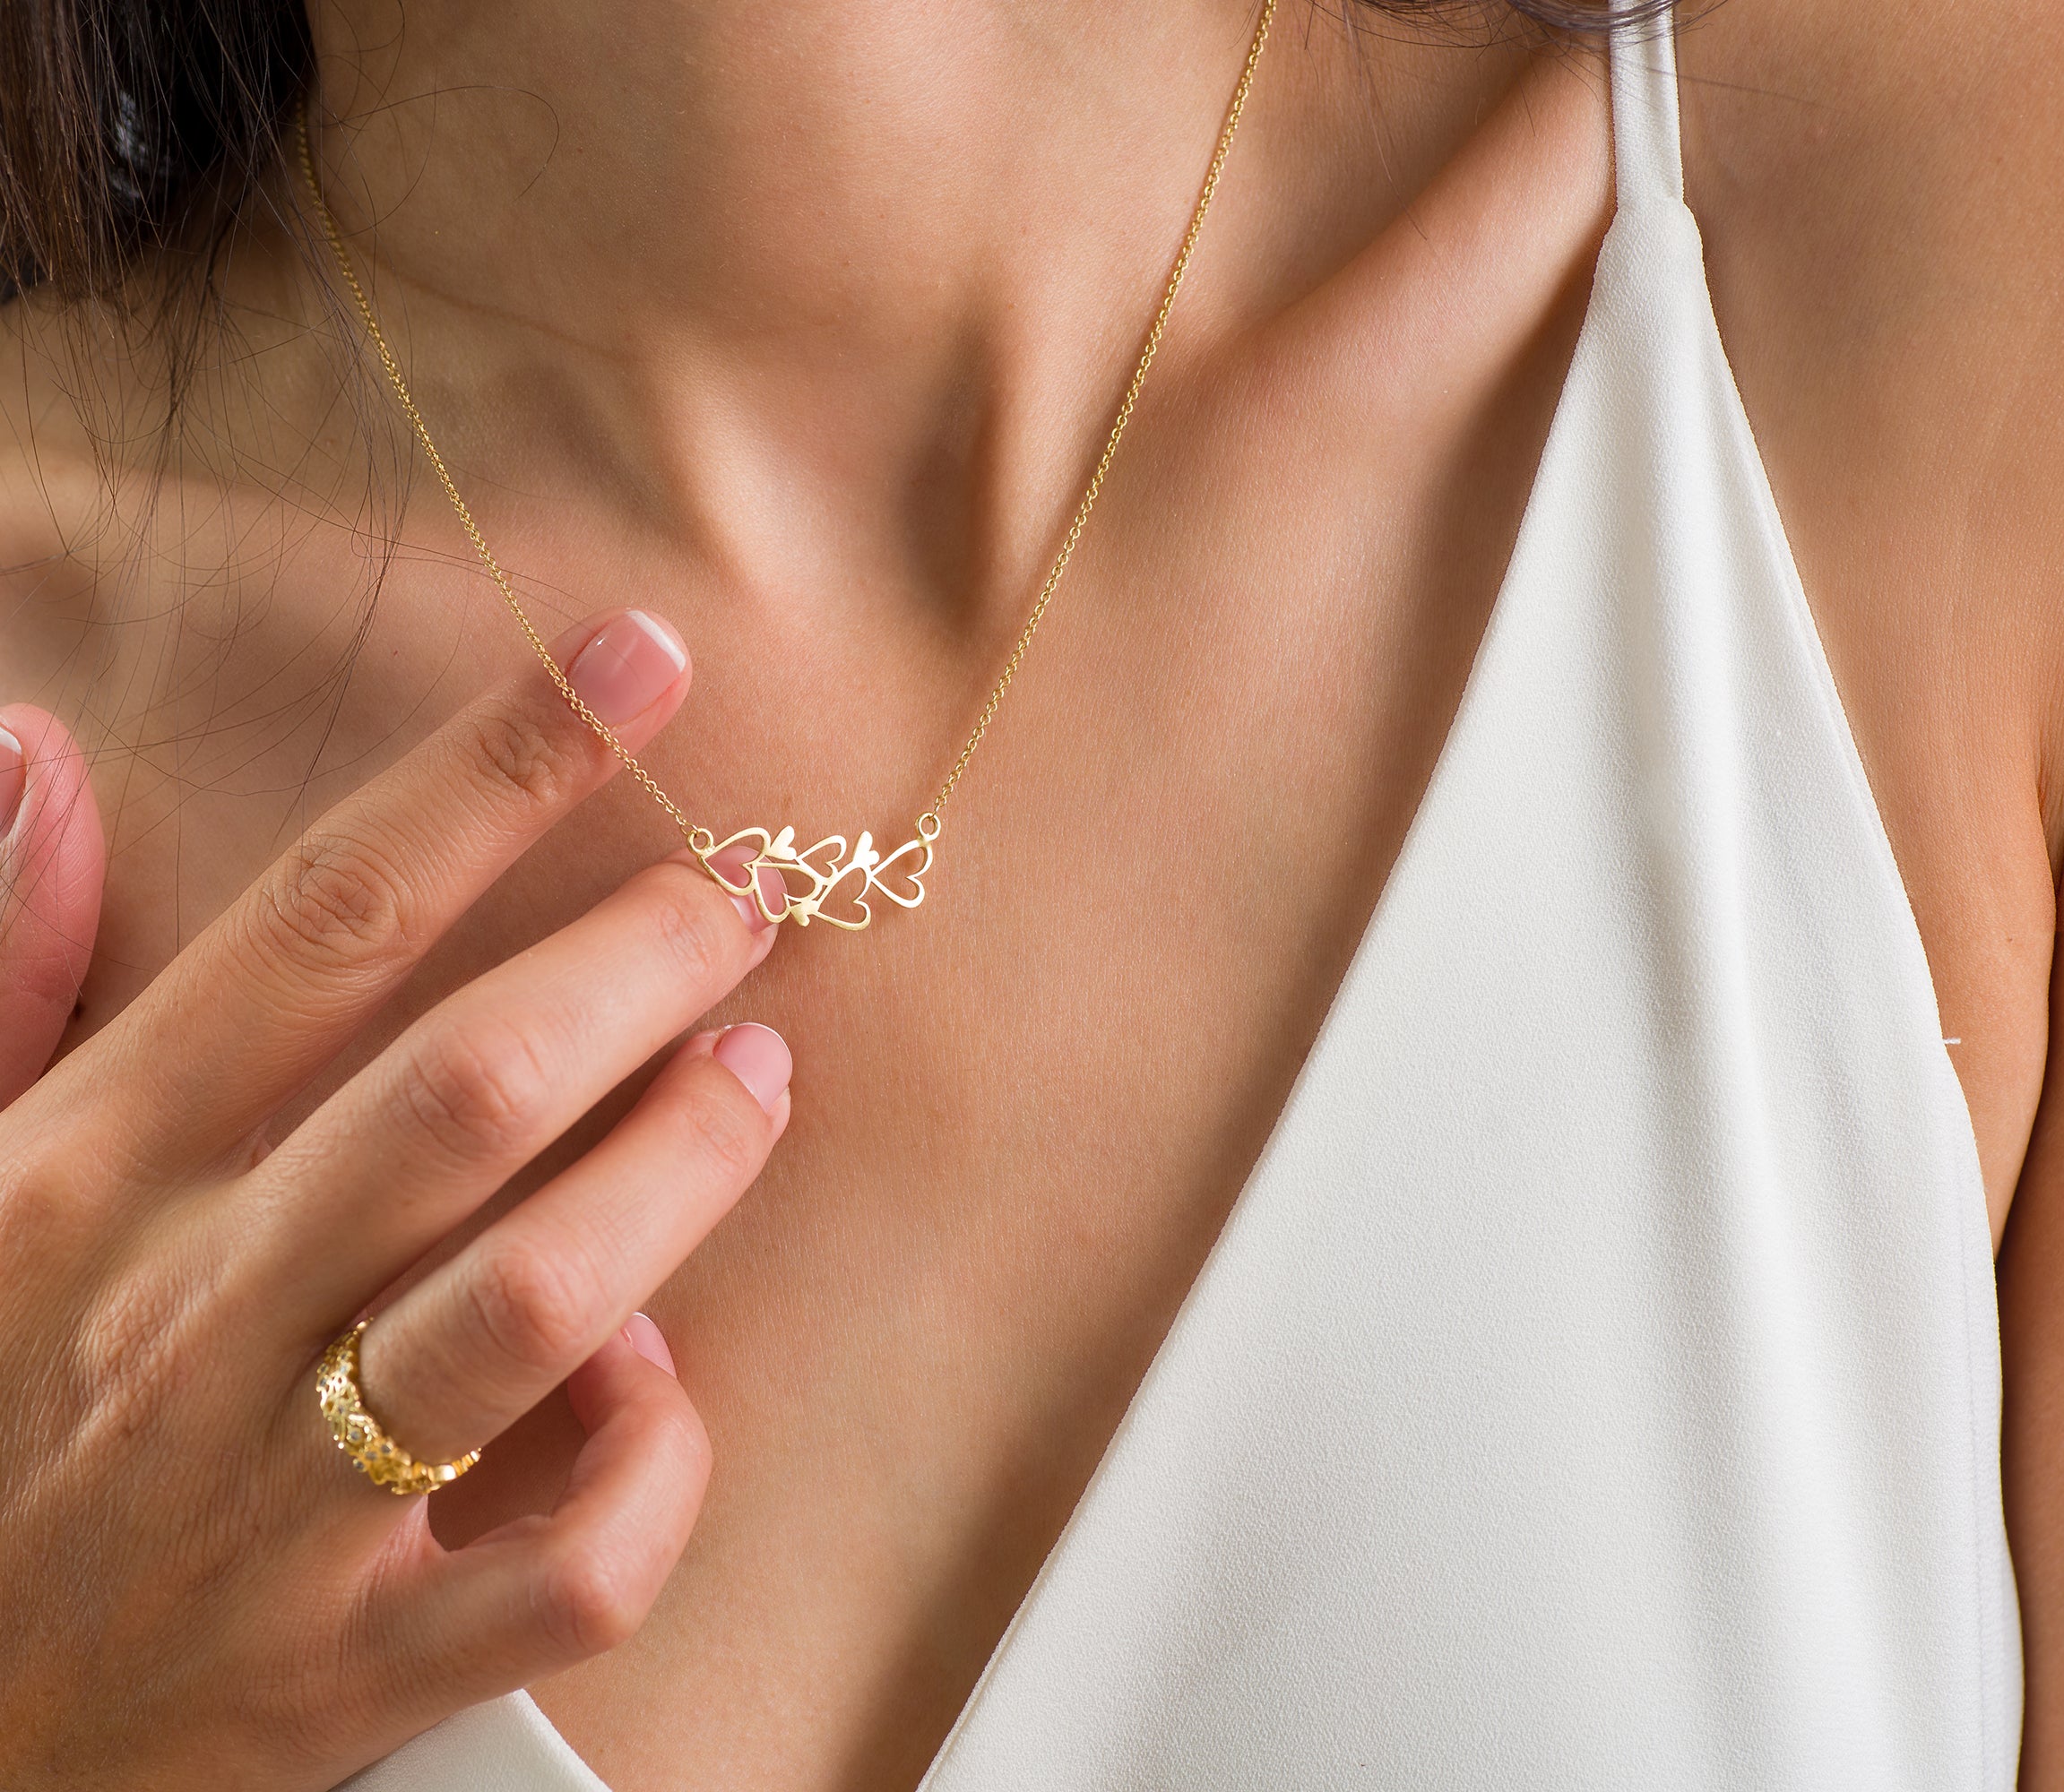 Hot Wife Jewelry Smokin Hotwife Birthday Valentine Gift – Giftsmojo